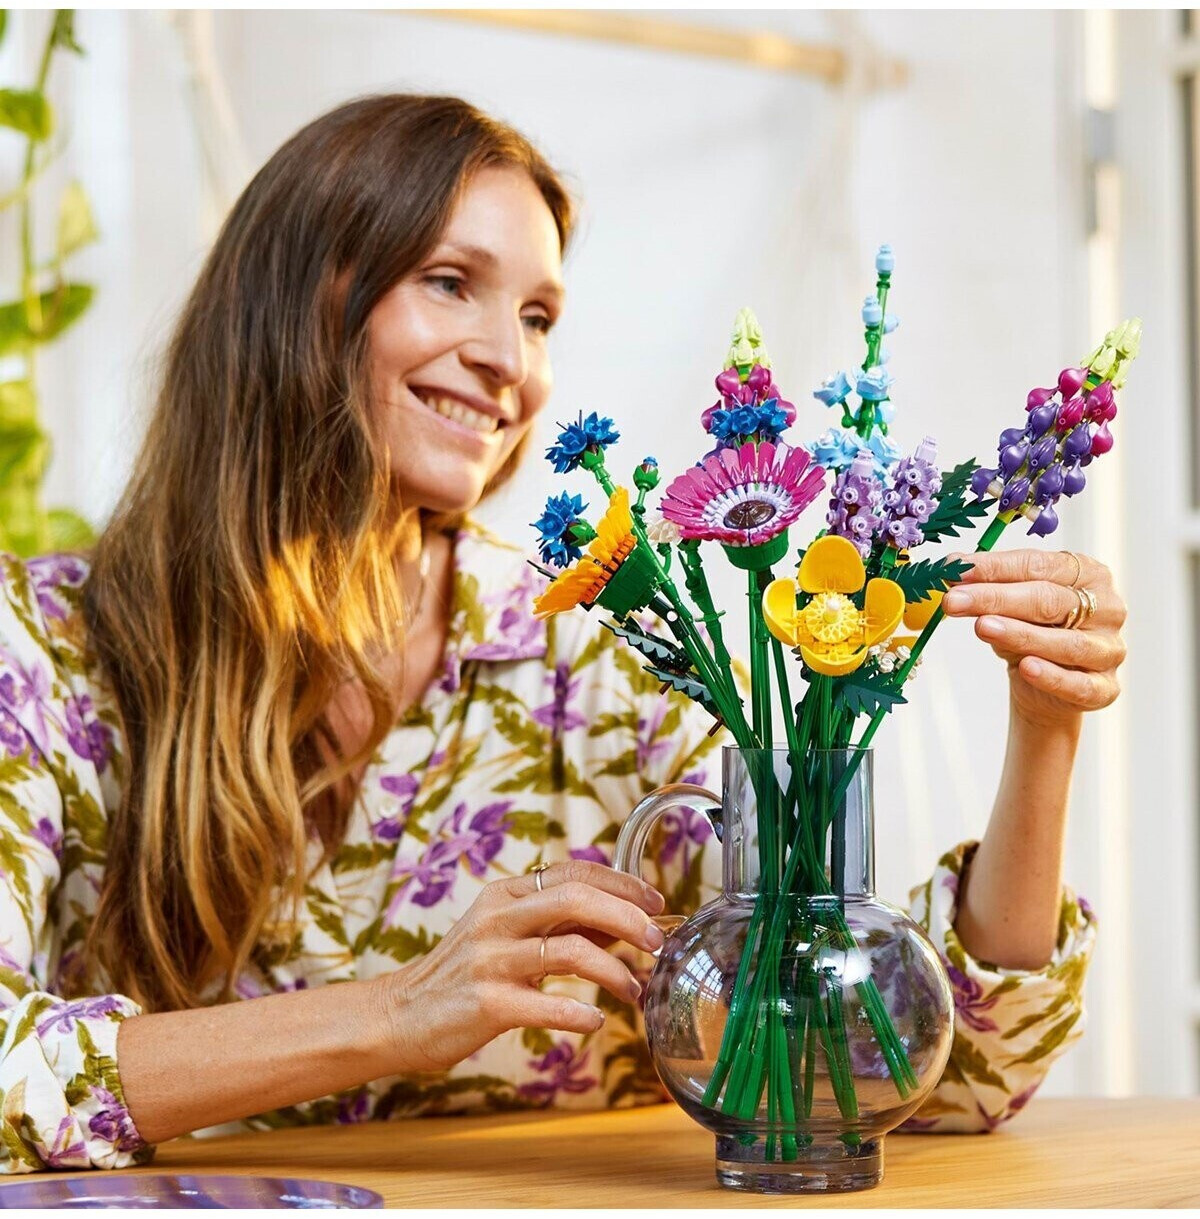 Soldes LEGO Icons - Bouquet de fleurs sauvages (10313) 2024 au meilleur  prix sur